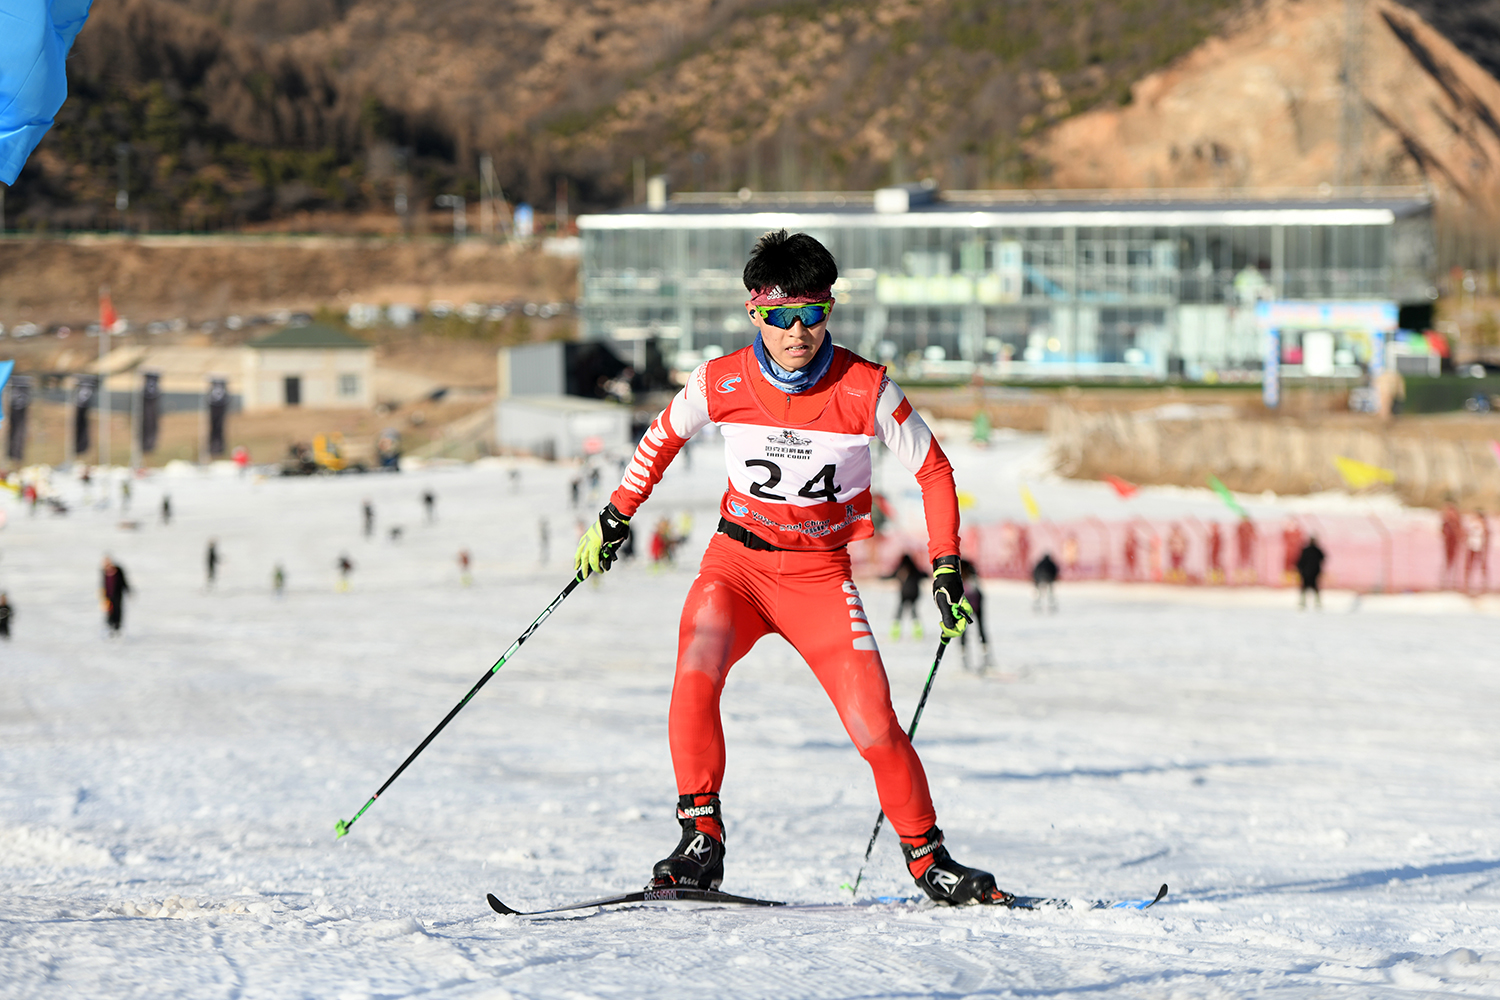 呂梁市體育運動學校越野滑雪隊的學生在千年景區滑雪場進行滑雪訓練。 